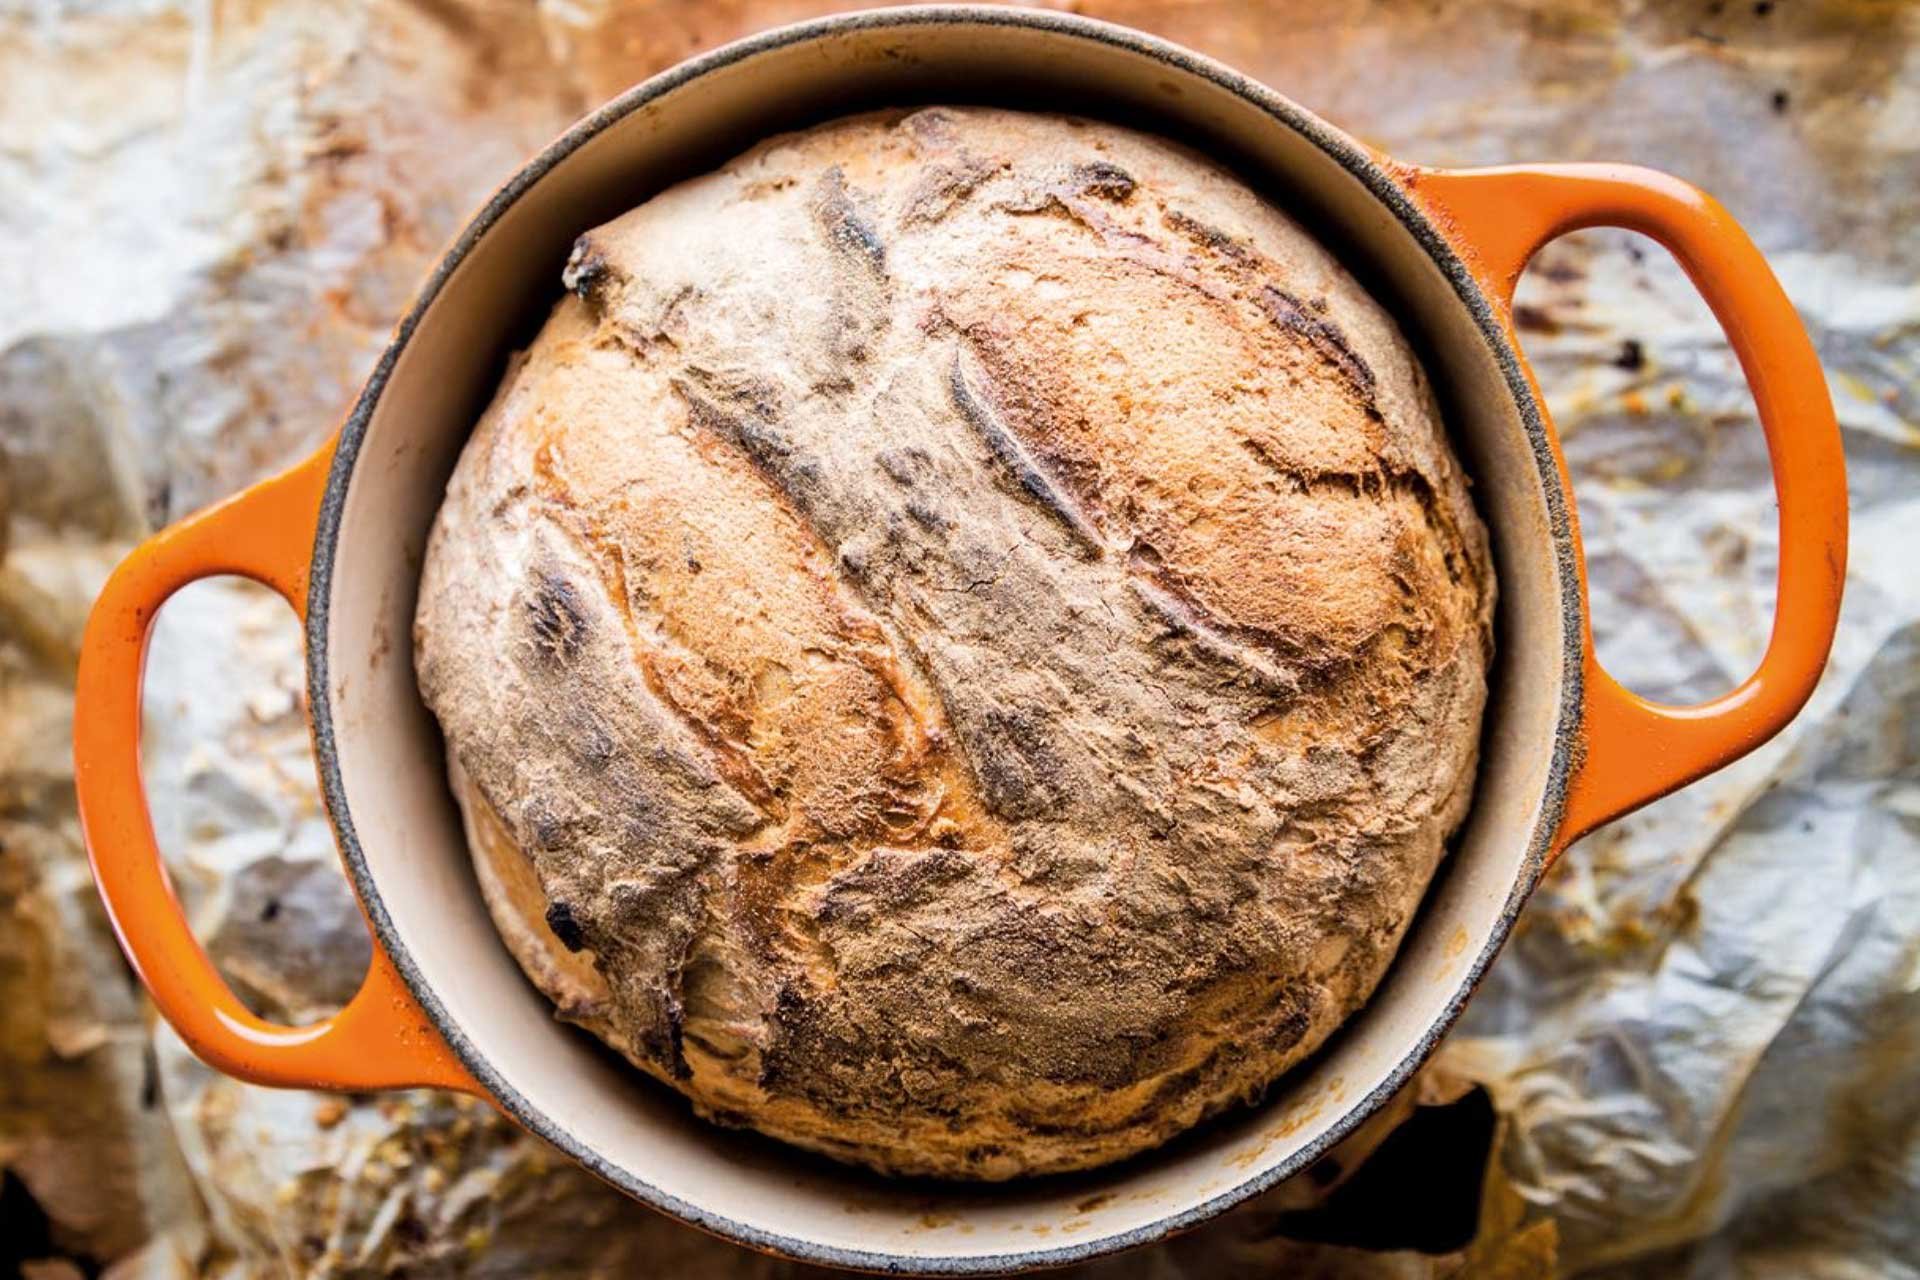 Weizensauerteig Brot mit Ziegenkäse Dip von Julian Kutos – gebacken in einem Gusseisernen Topf von LeCreuset.